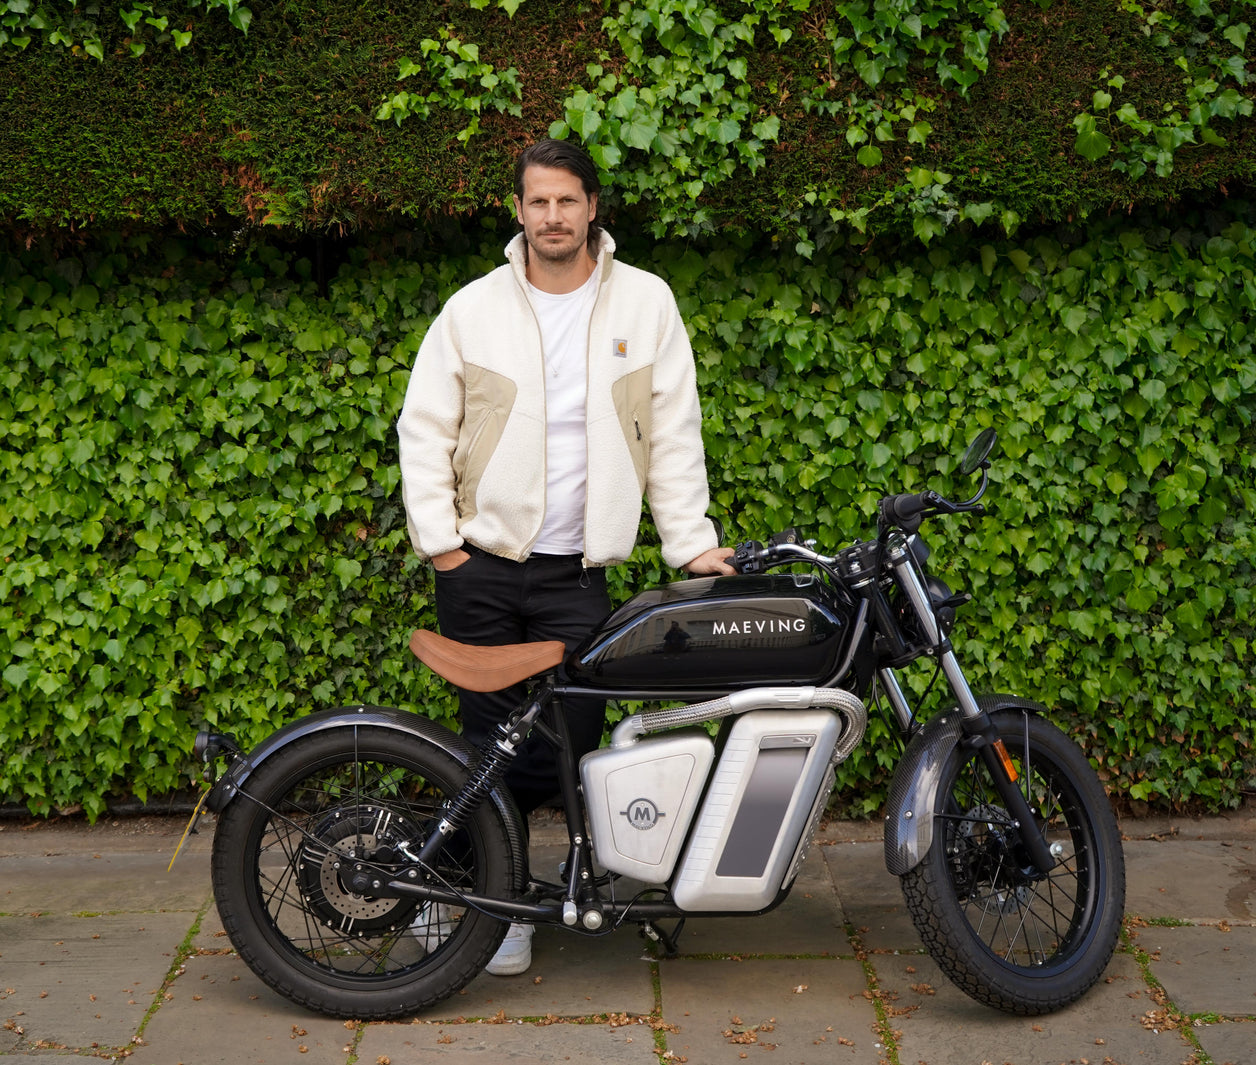 Maeving Rider Guide: Ryan Kohn Cofounder of Proper